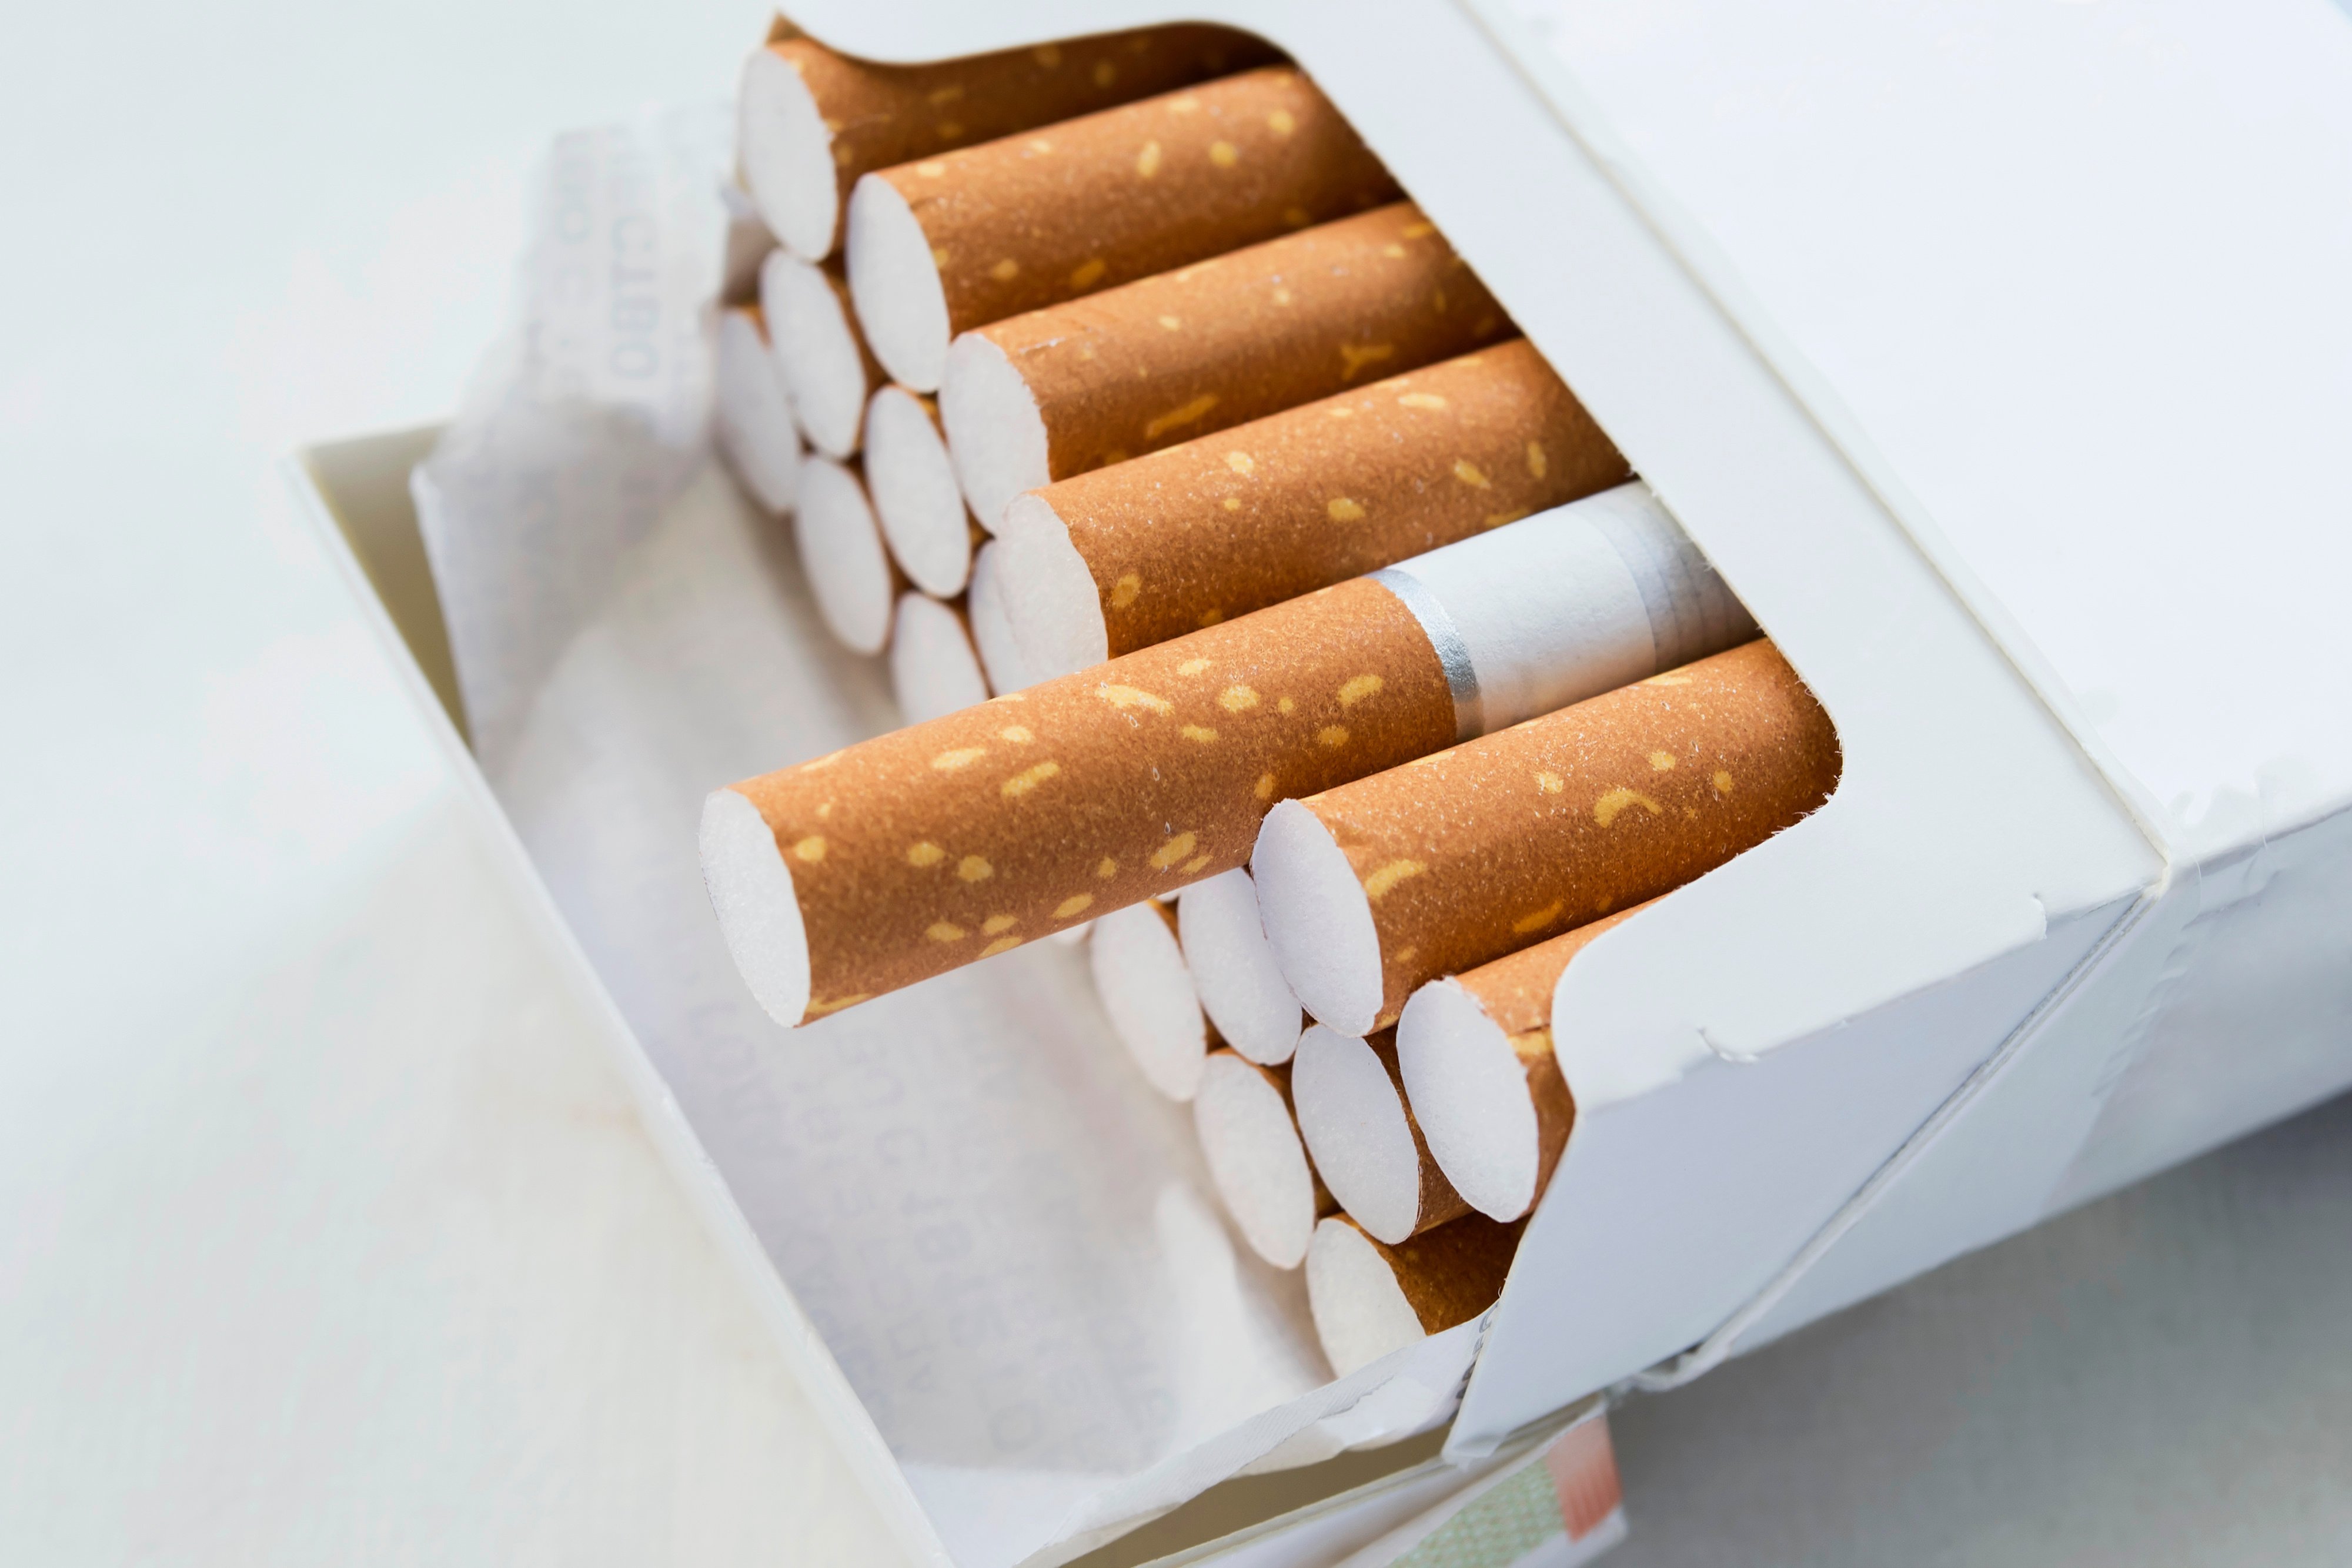 ΑΑΔΕ: Κατάσχεση 4,5 τόνων λαθραίων τσιγάρων – Πάνω από 900.000 ευρώ οι αναλογούντες δασμοί και φόροι